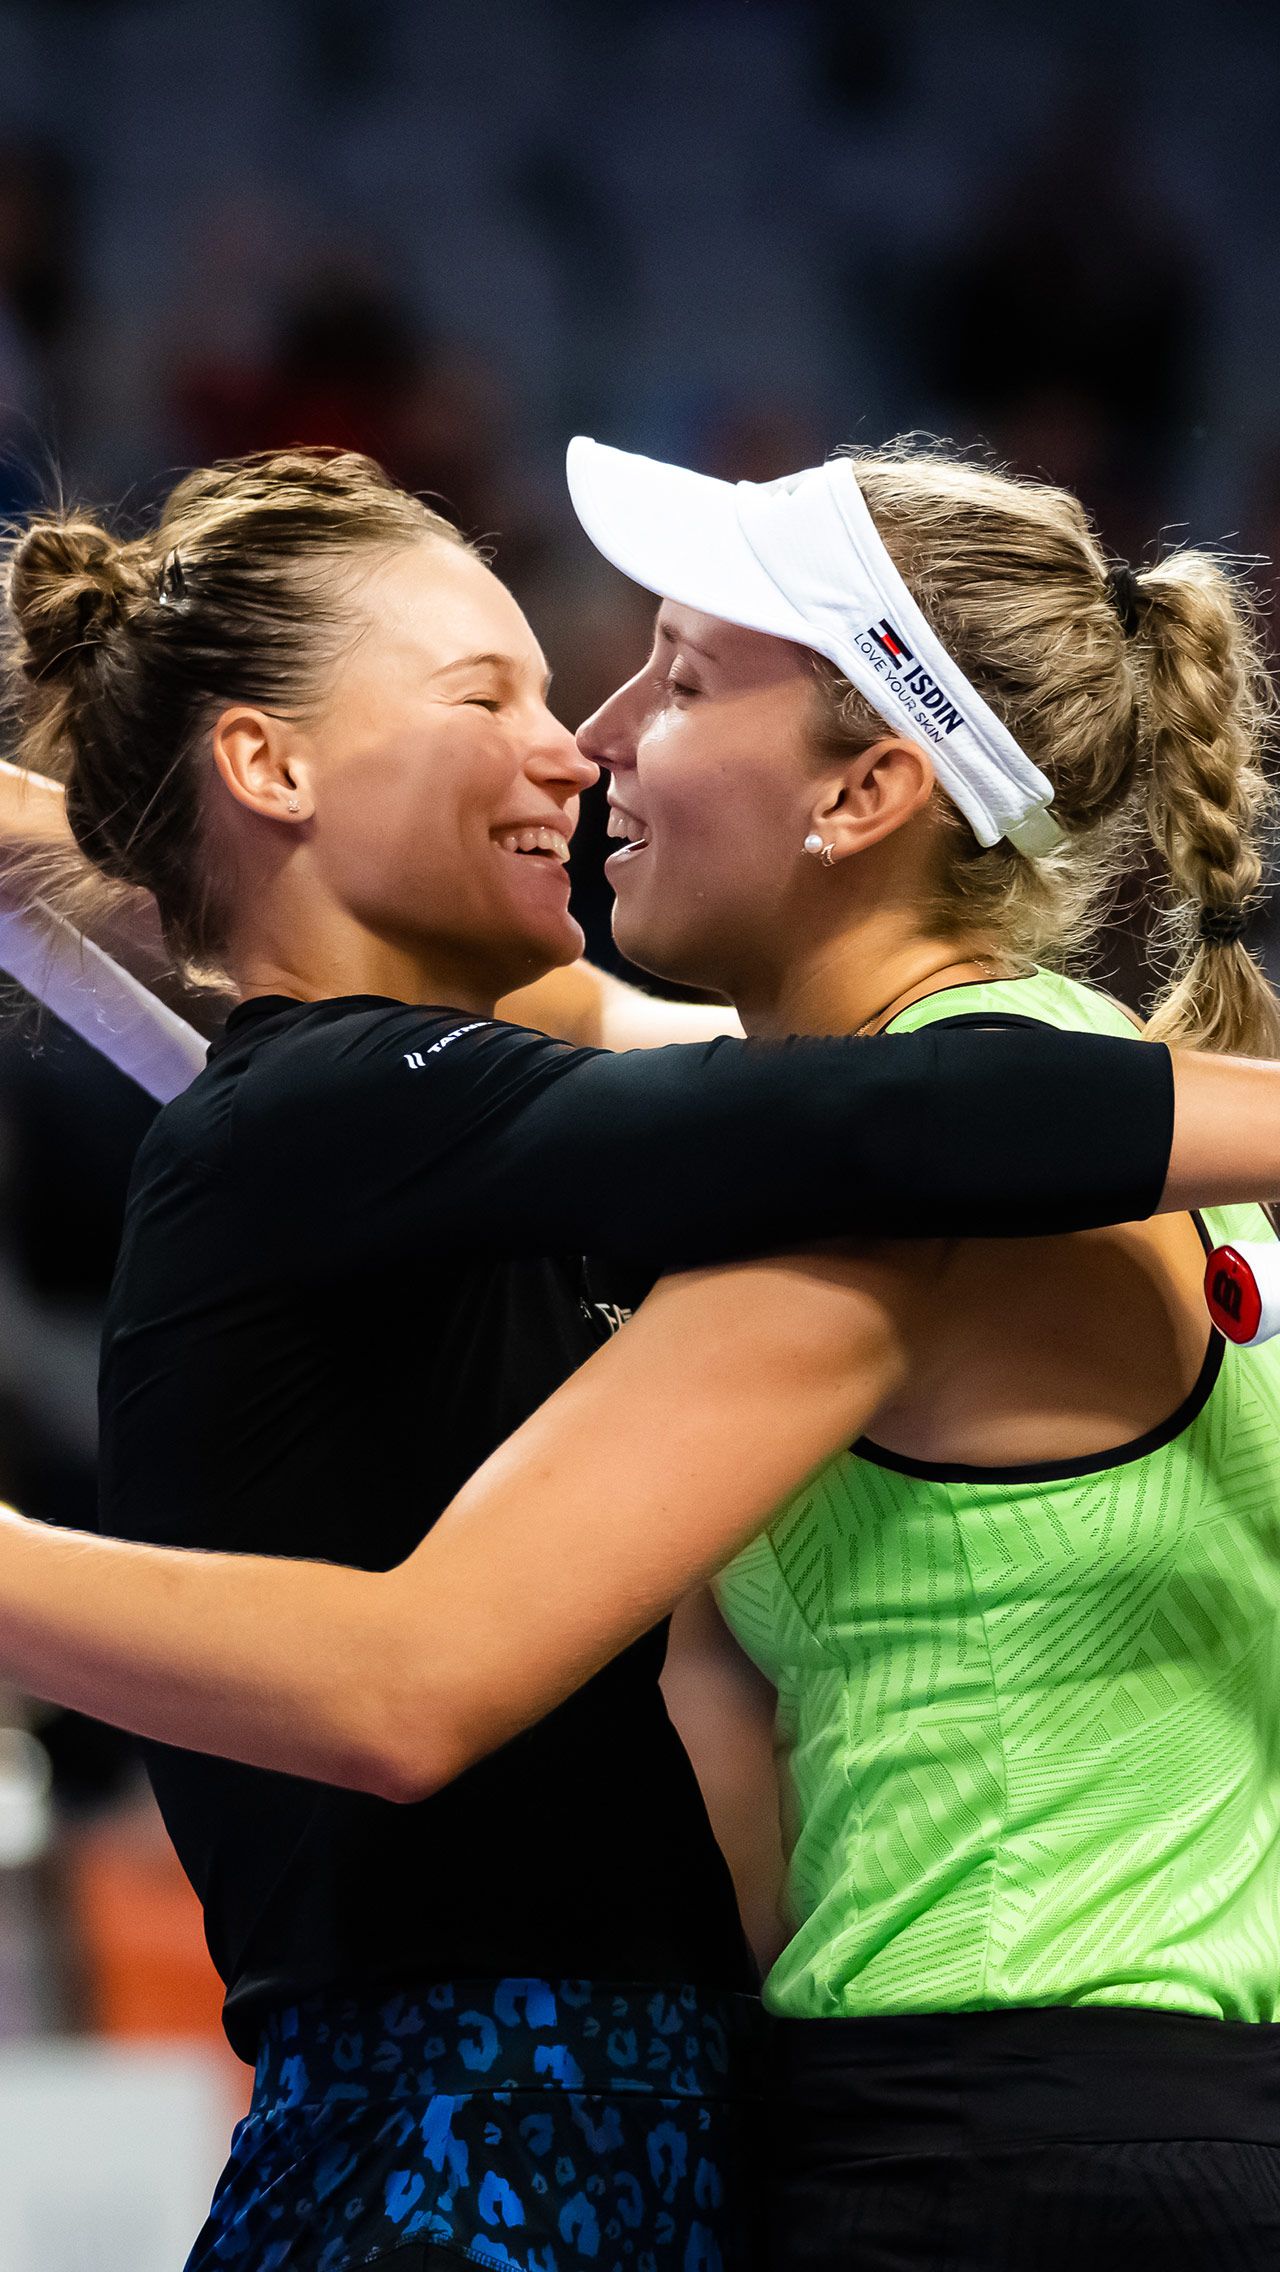 Яркая победа в финале парного Итогового турнира WTA c Мертенс